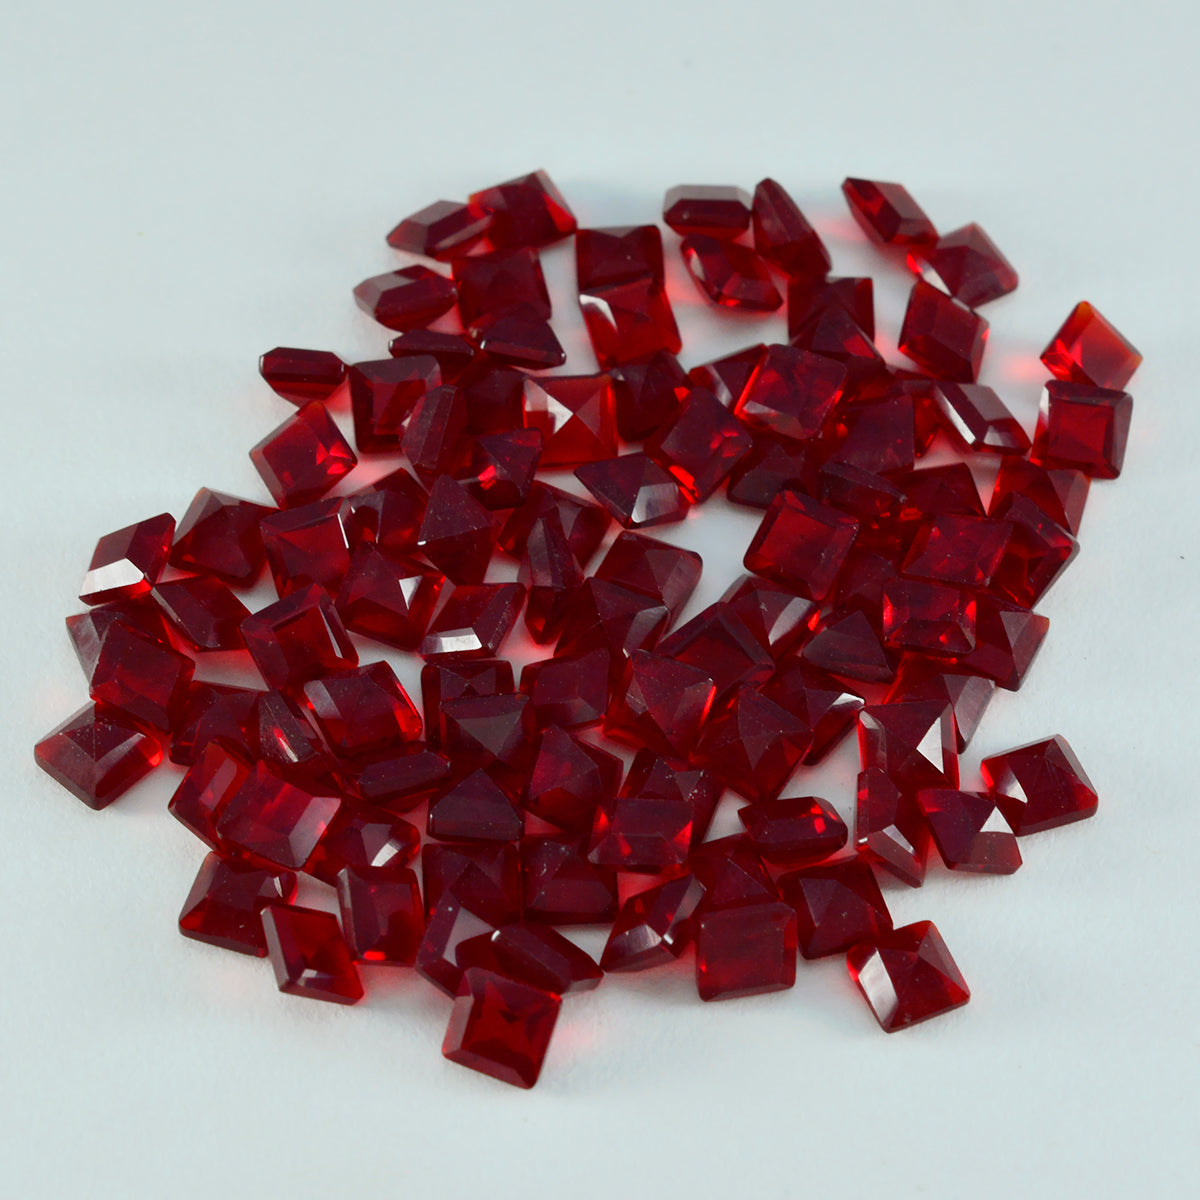 riyogems 1 шт. красный рубин cz ограненный 5x5 мм квадратной формы красивый качественный драгоценный камень